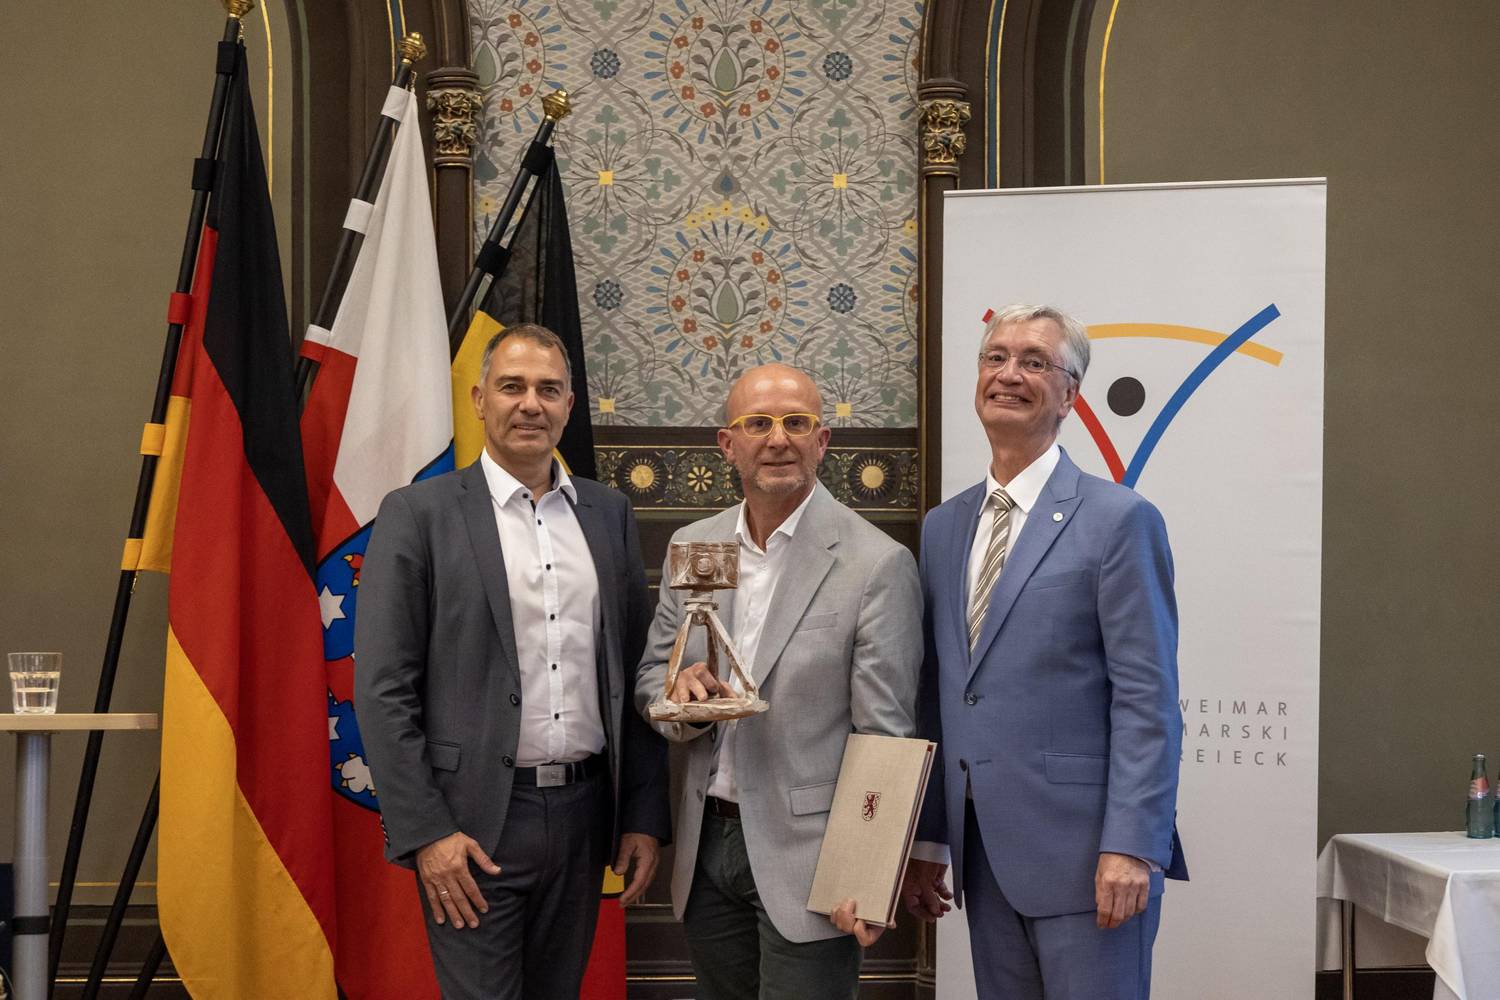 Weimarer-Dreieck-Preis 2023: V.l. Oberbürgermeister Peter Kleine, Preisträger Eric Vazzoler und Dieter Hackmann, Vorsitzender des Weimarer Dreieck e.V.